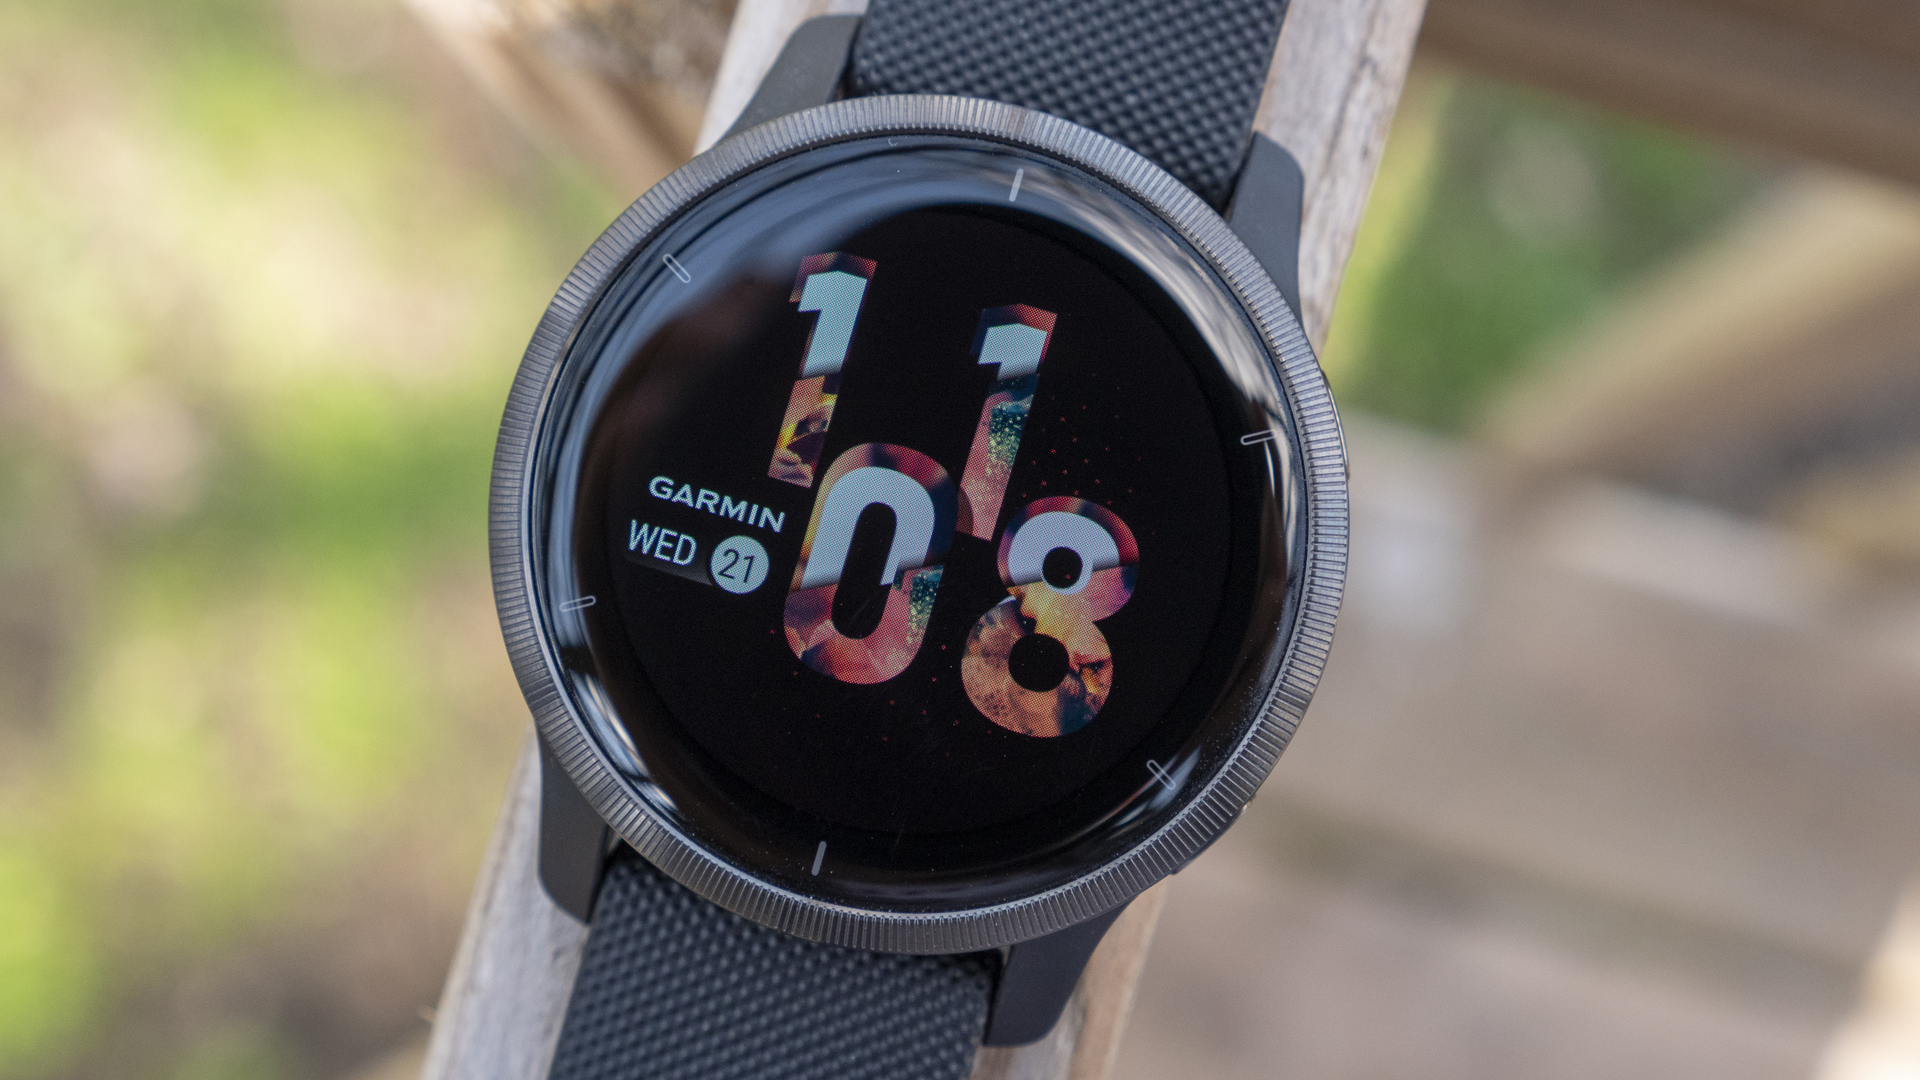 Garmin giới thiệu đồng hồ Venu 2 mới với thời lượng pin được cải thiện